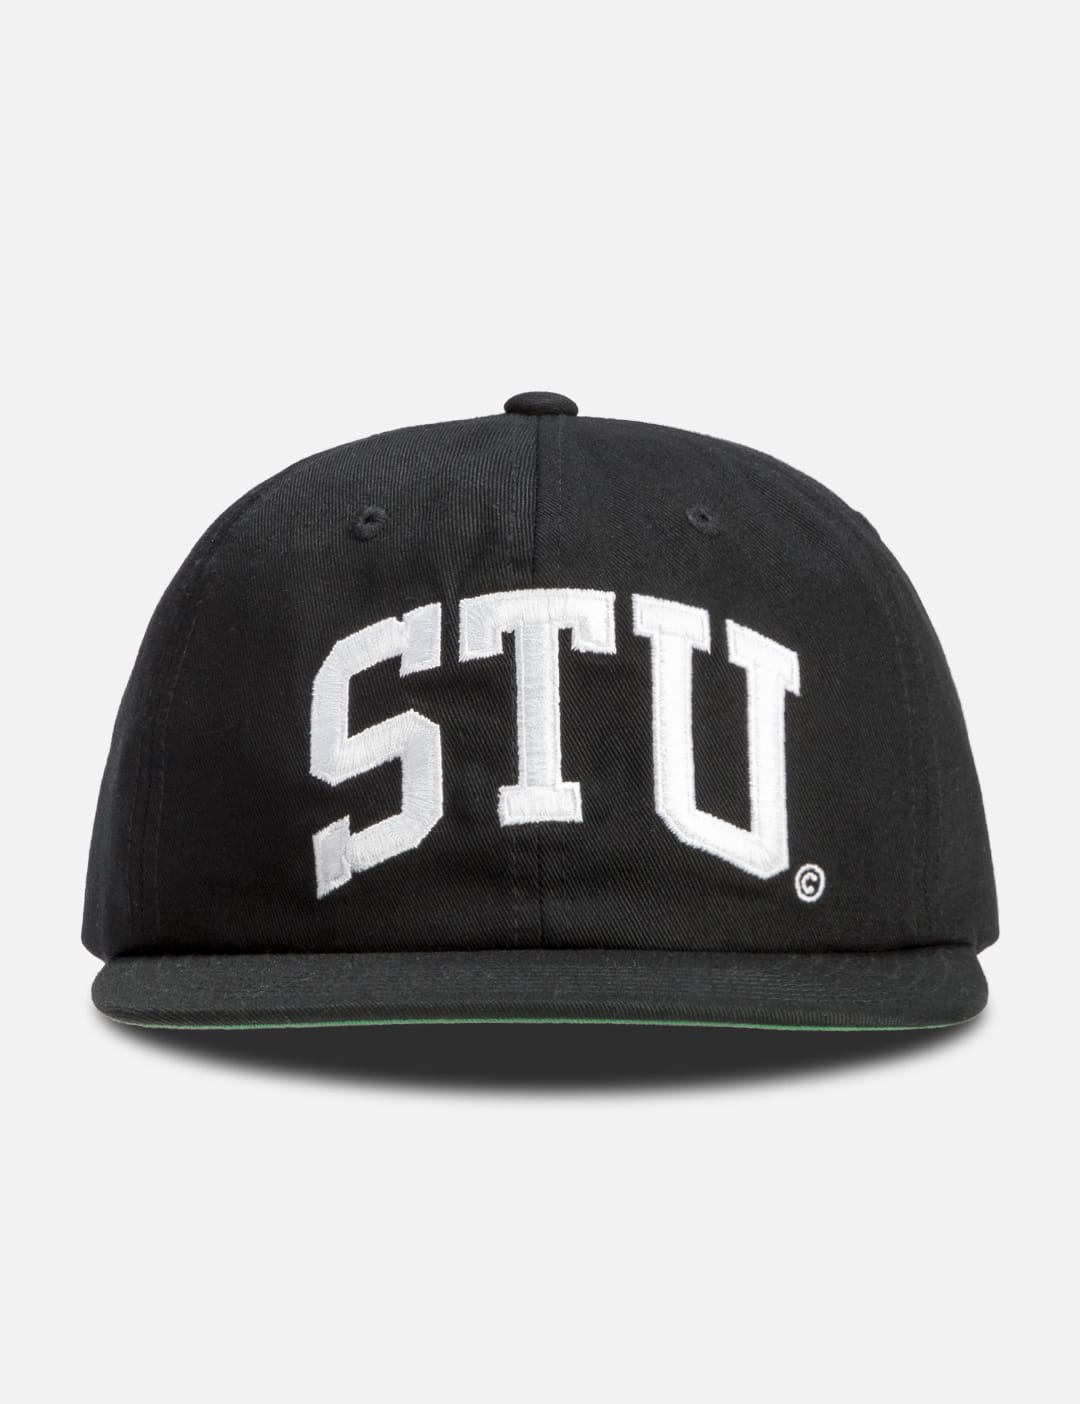 Stüssy - STU Arch Strapback Cap | HBX - Globally Curated Fashion